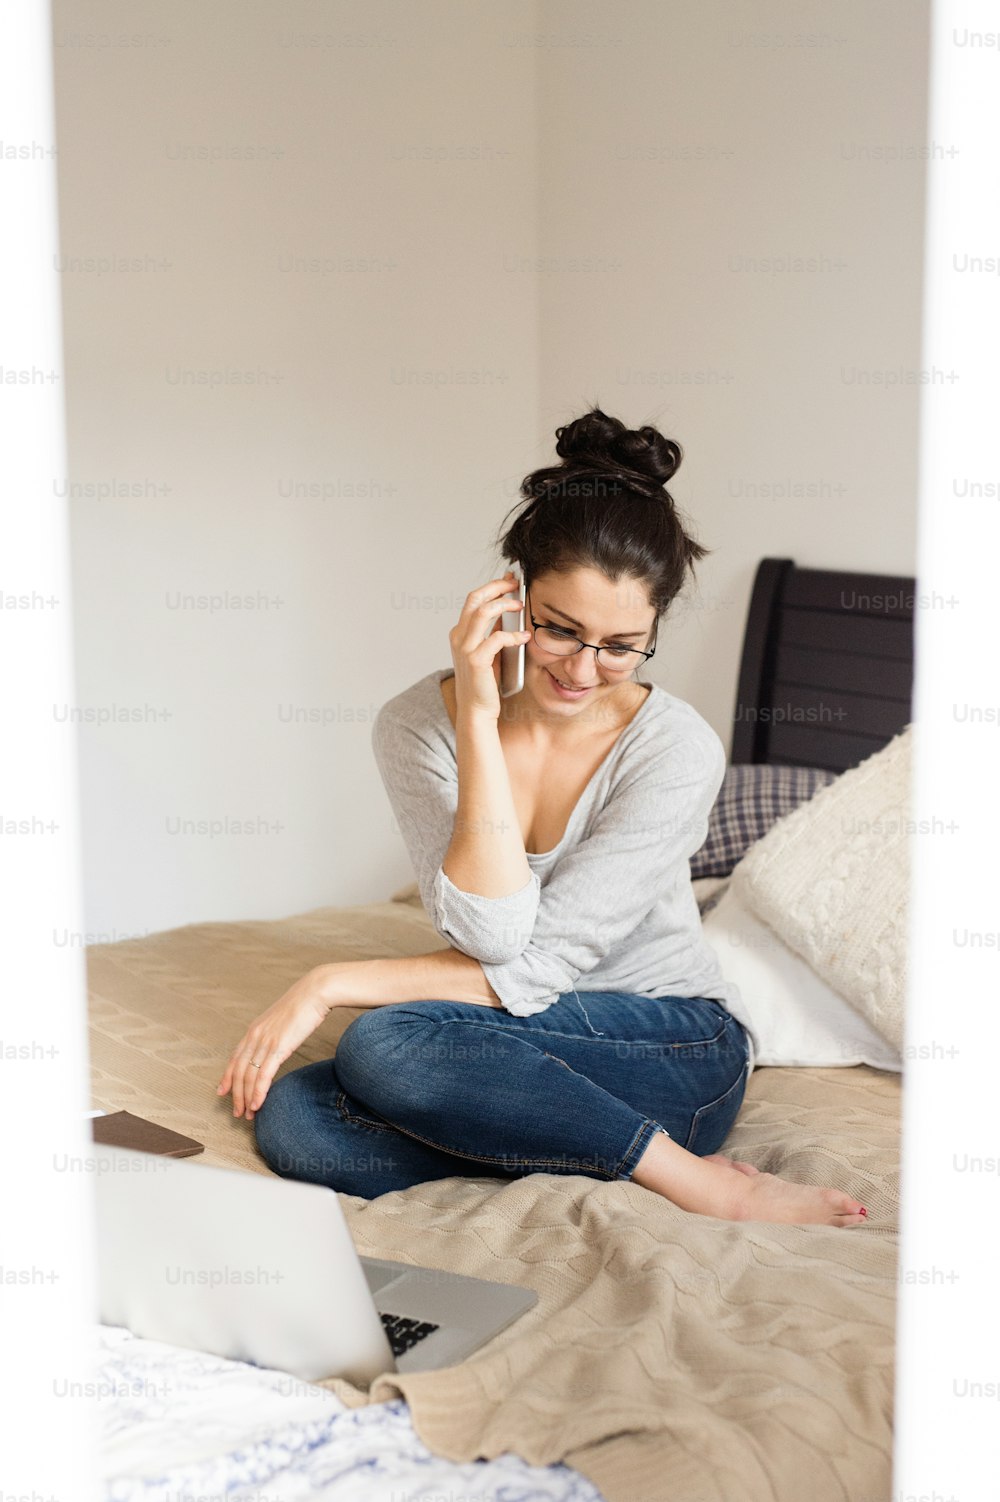 Hermosa joven con anteojos sentada en la cama, cuaderno a su lado, sosteniendo un teléfono inteligente, haciendo una llamada telefónica, oficina en casa.